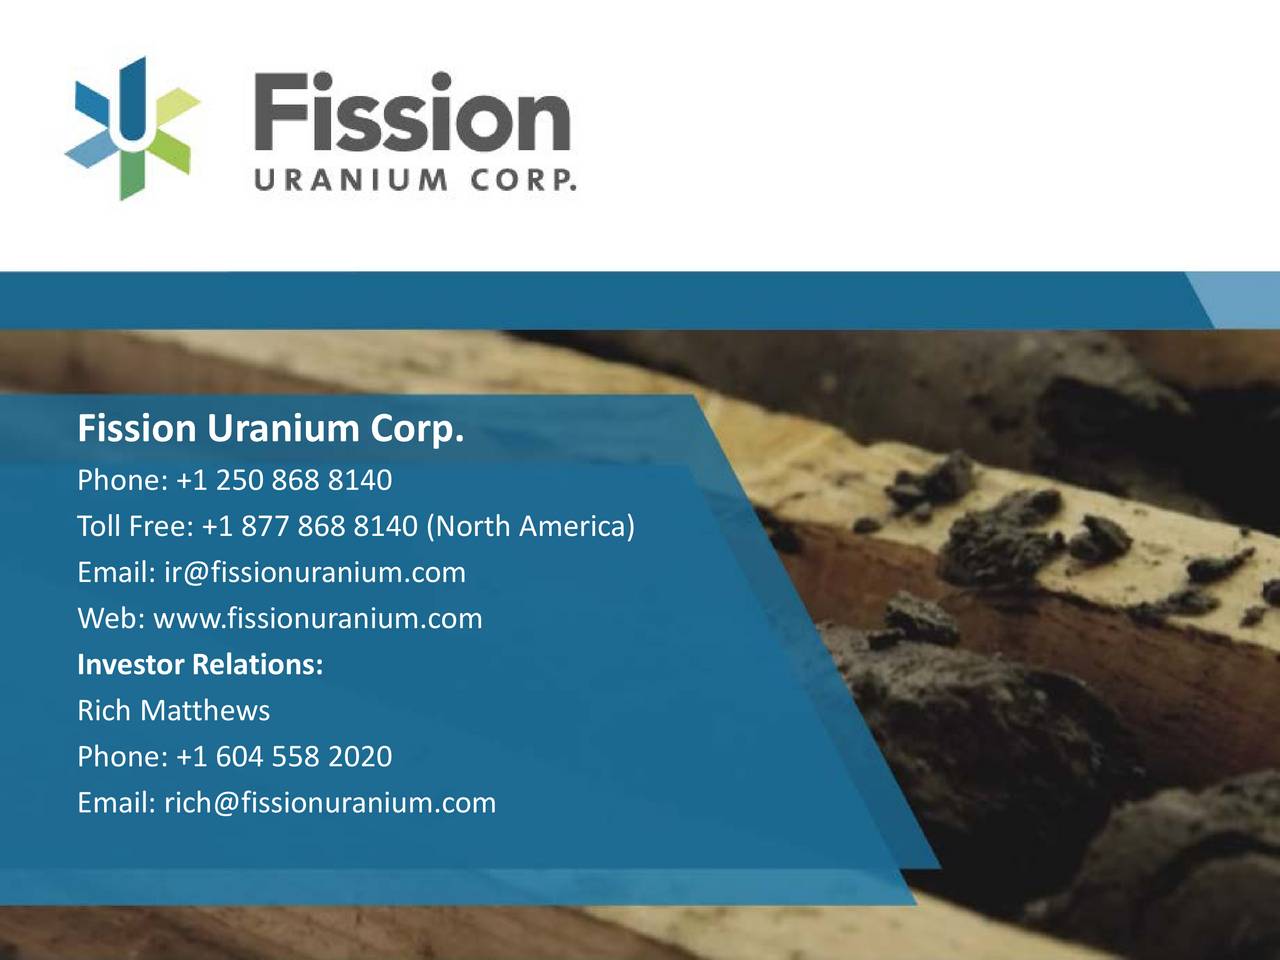 fission uranium corp finances